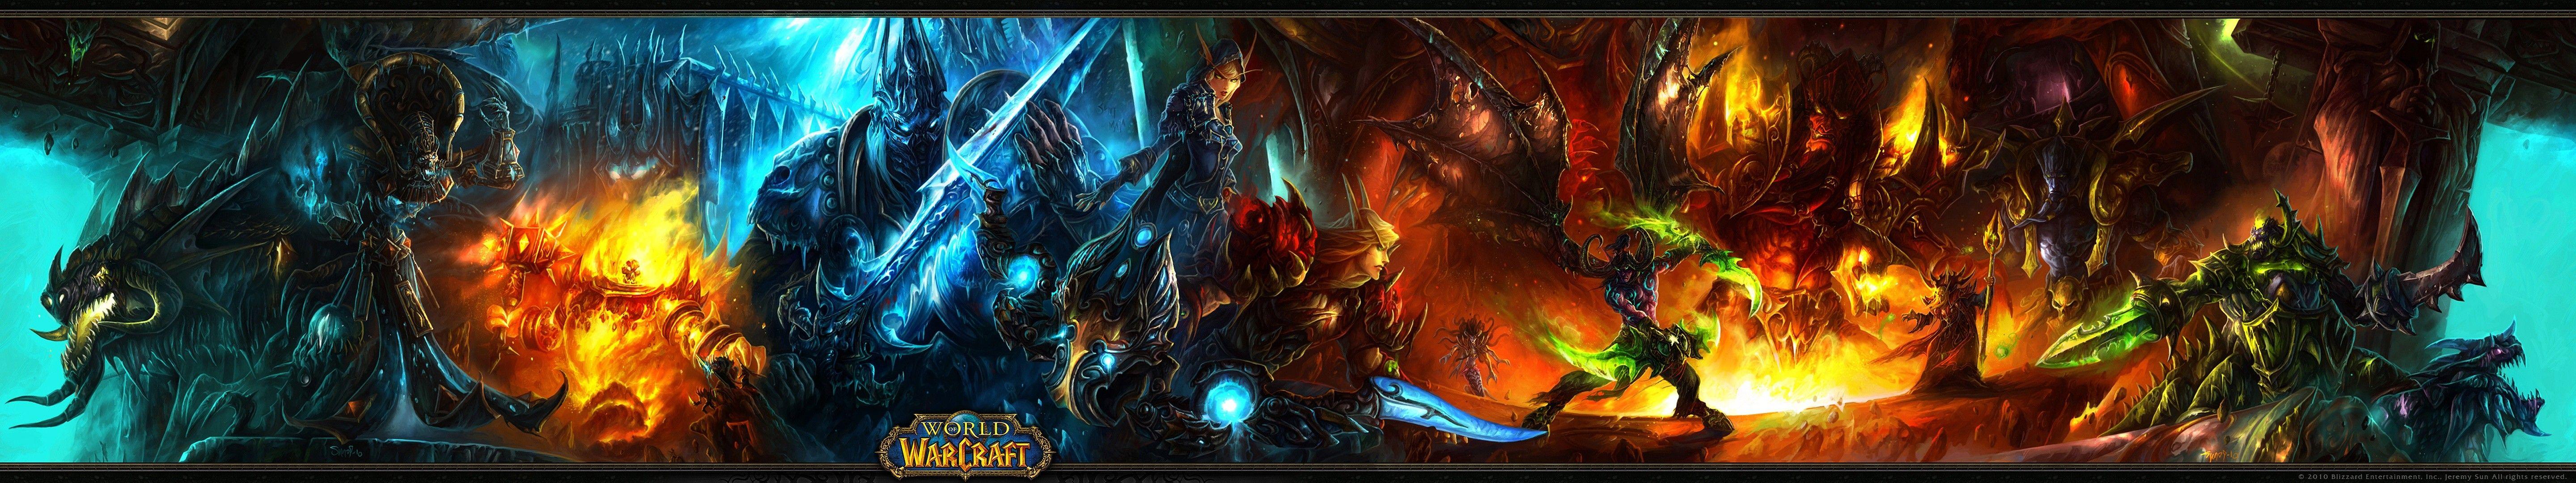 World Of Warcraft Dual Monitor Wallpaper Warcraft Monitore ...